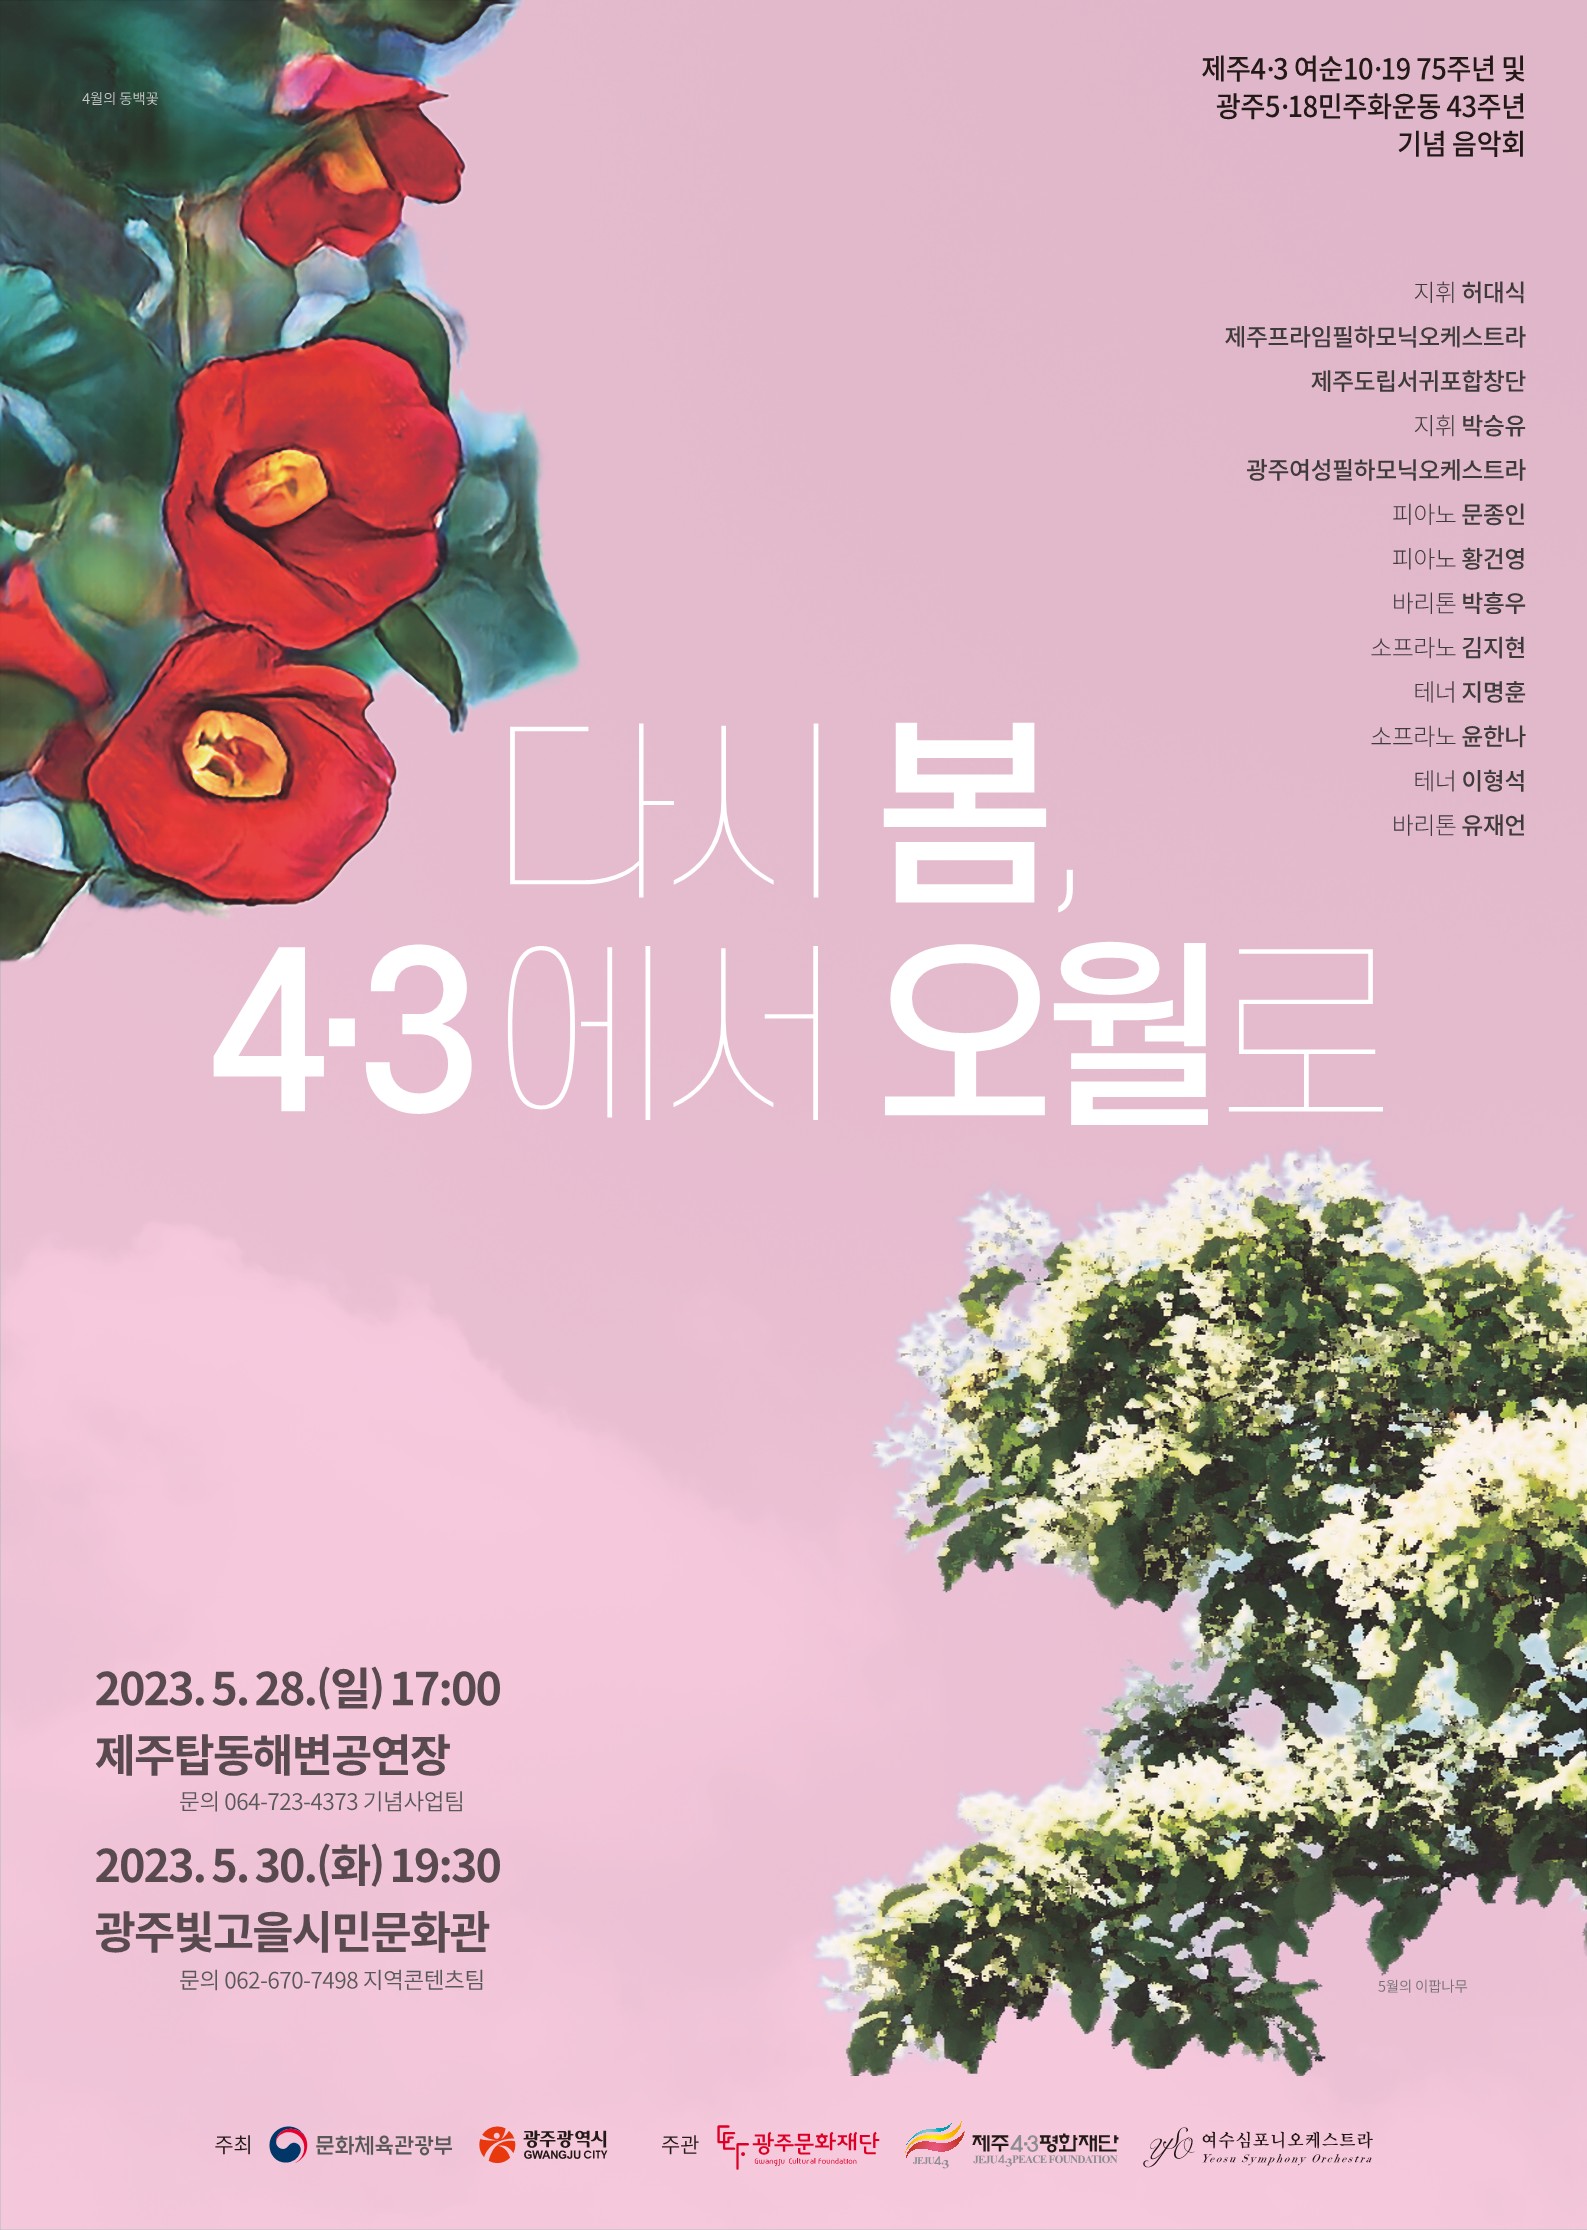 다시 봄 4.3에서 오월로 포스터(컬러)_1.jpg